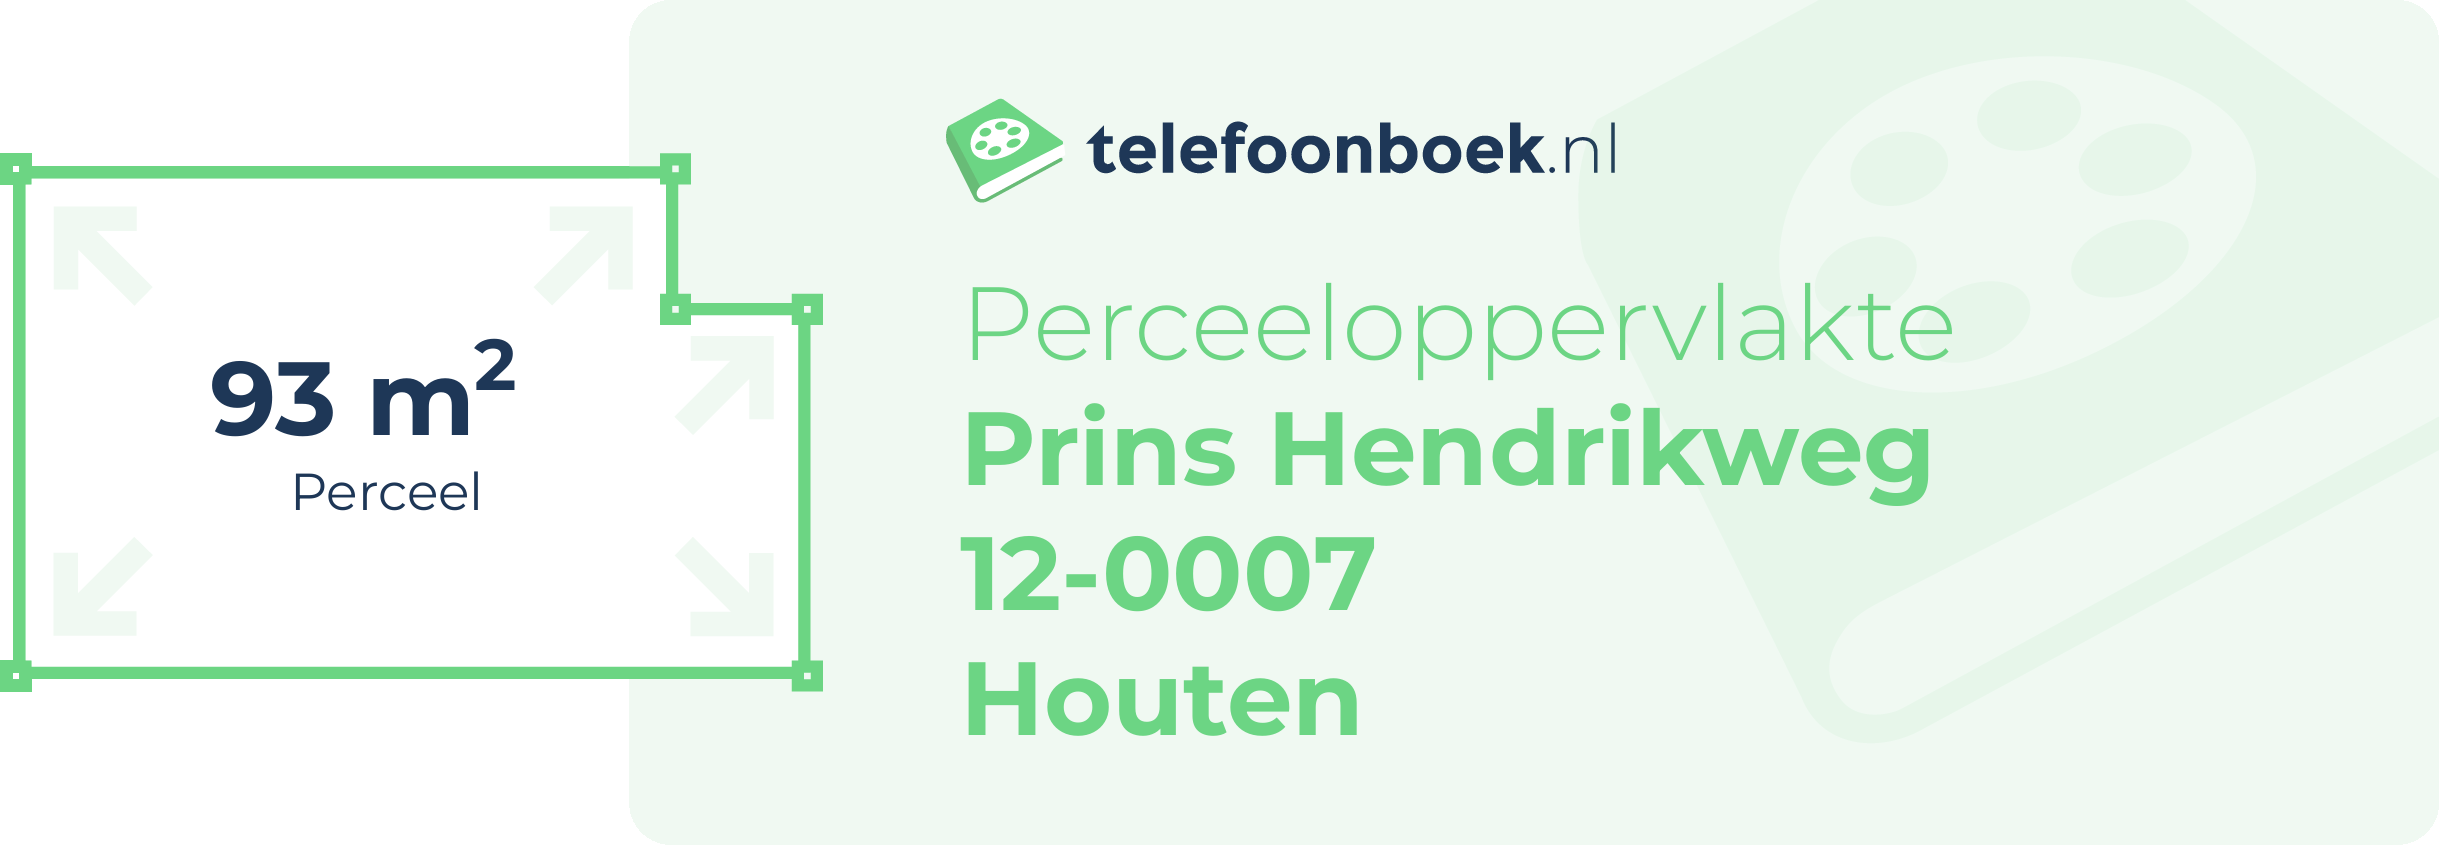 Perceeloppervlakte Prins Hendrikweg 12-0007 Houten